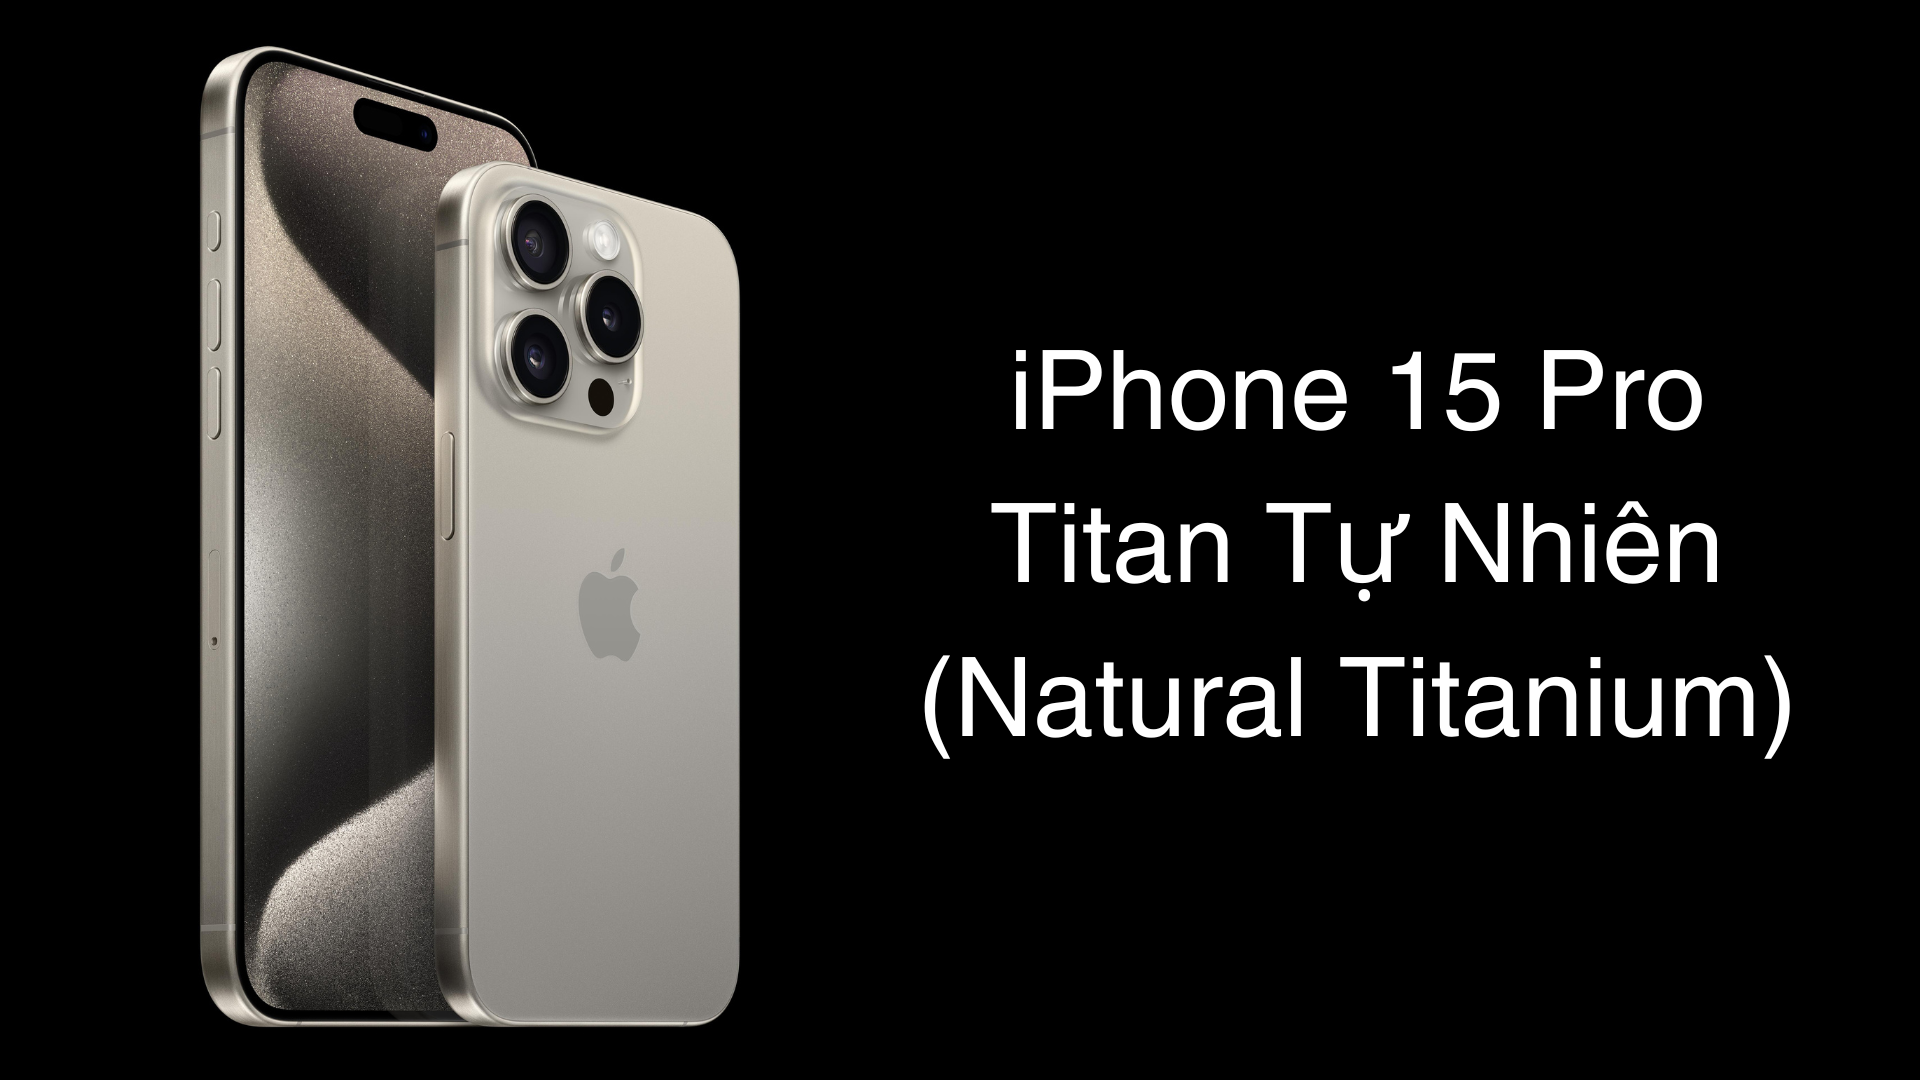 iPhone 15 Pro màu Titan Tự Nhiên phù hợp với những phong cách mang hơi hướng cổ điển, quý phái